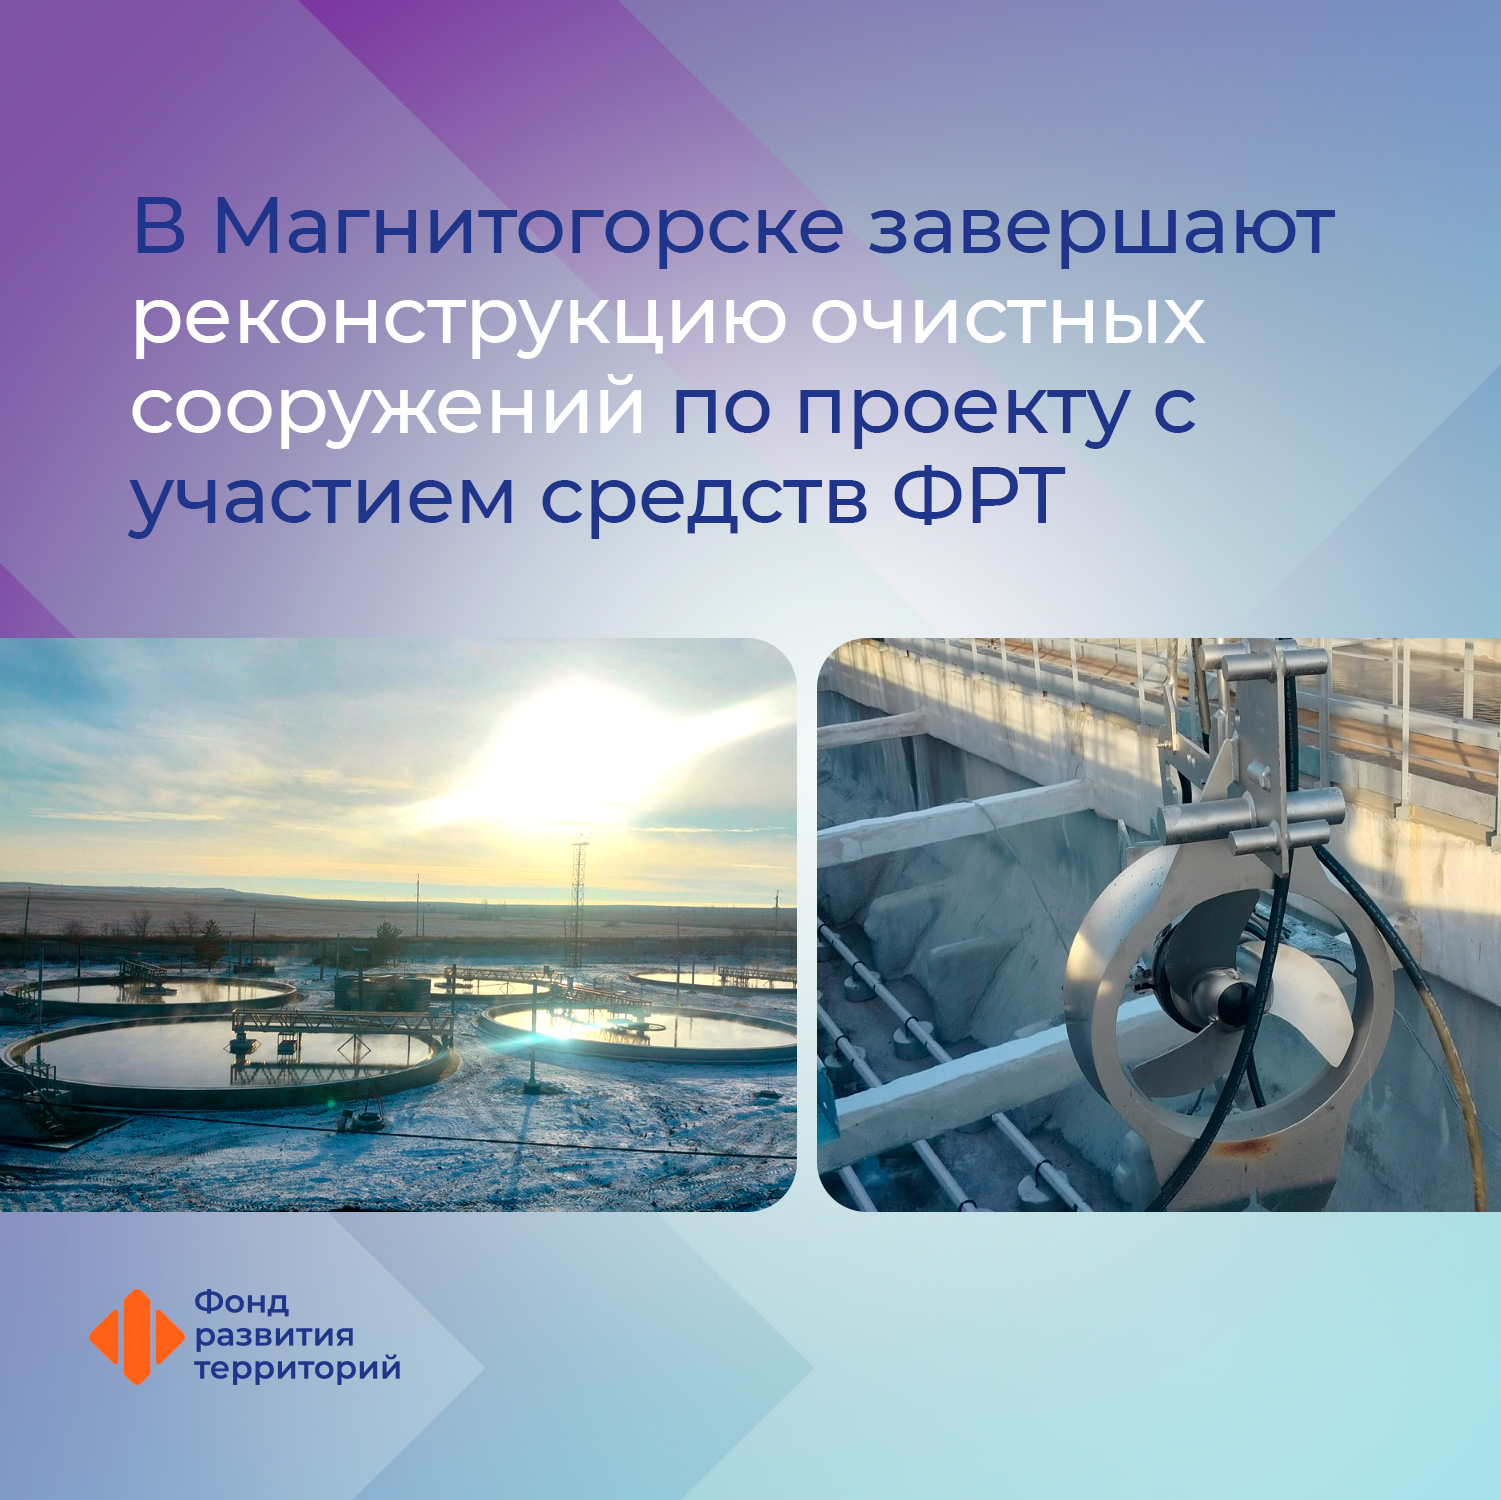 В Магнитогорске завершают реконструкцию очистных сооружений по проекту с участием средств ФРТ